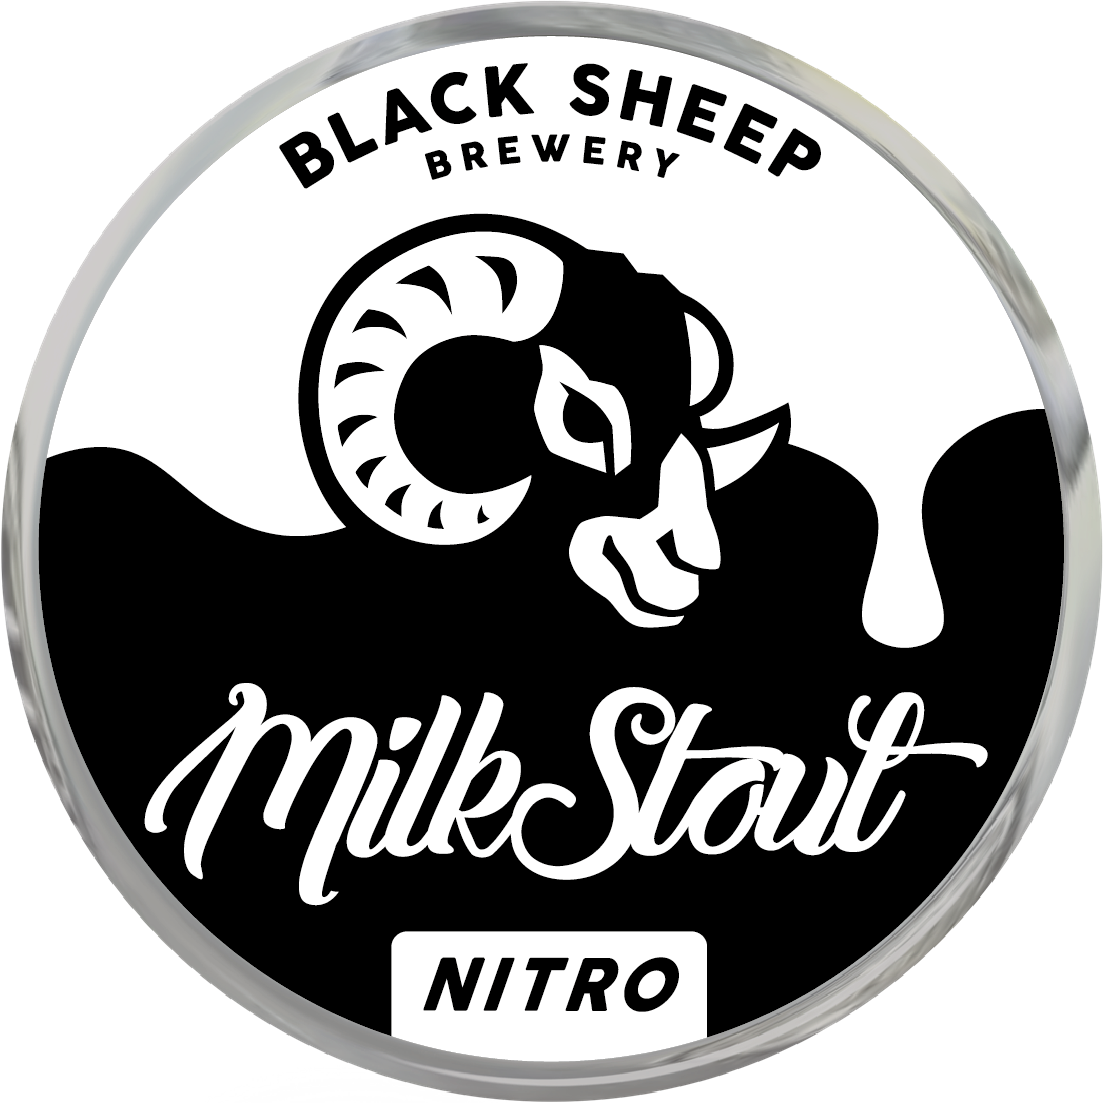 Milk Stout Logo